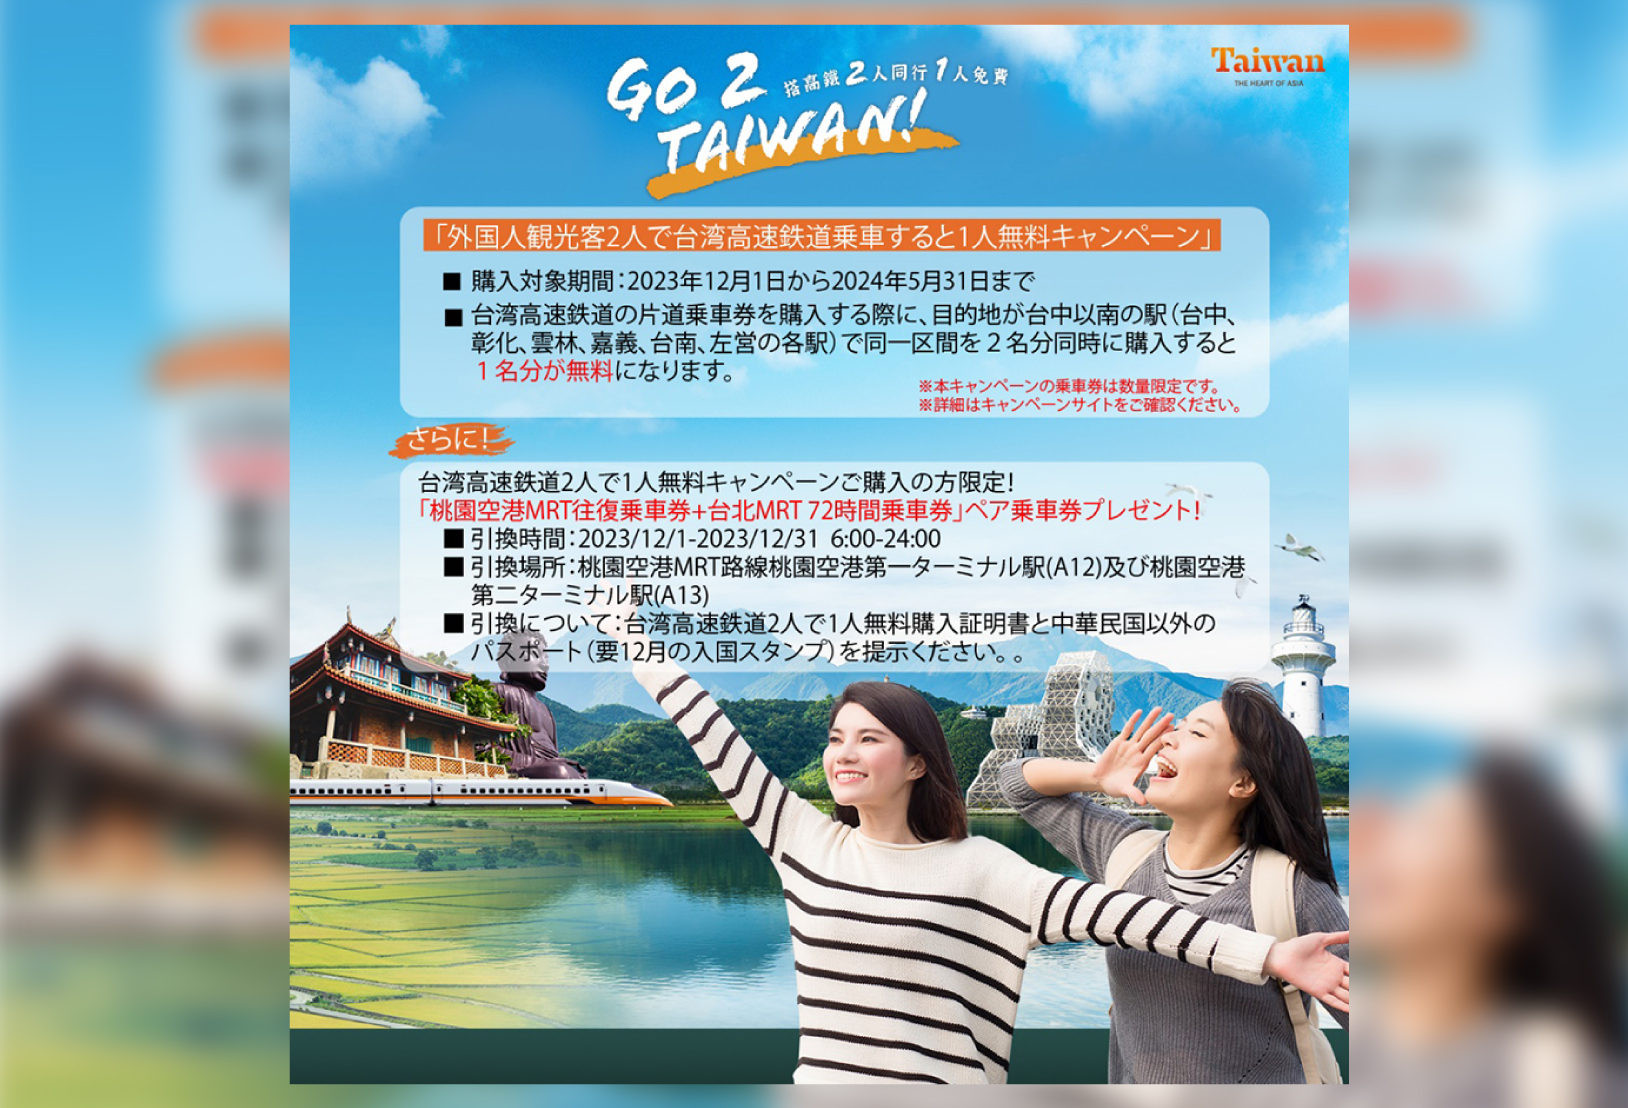 「外国人観光客2人で台湾高速鉄道乗車で1人無料キャンペーン」 初回限定特典のお知らせ